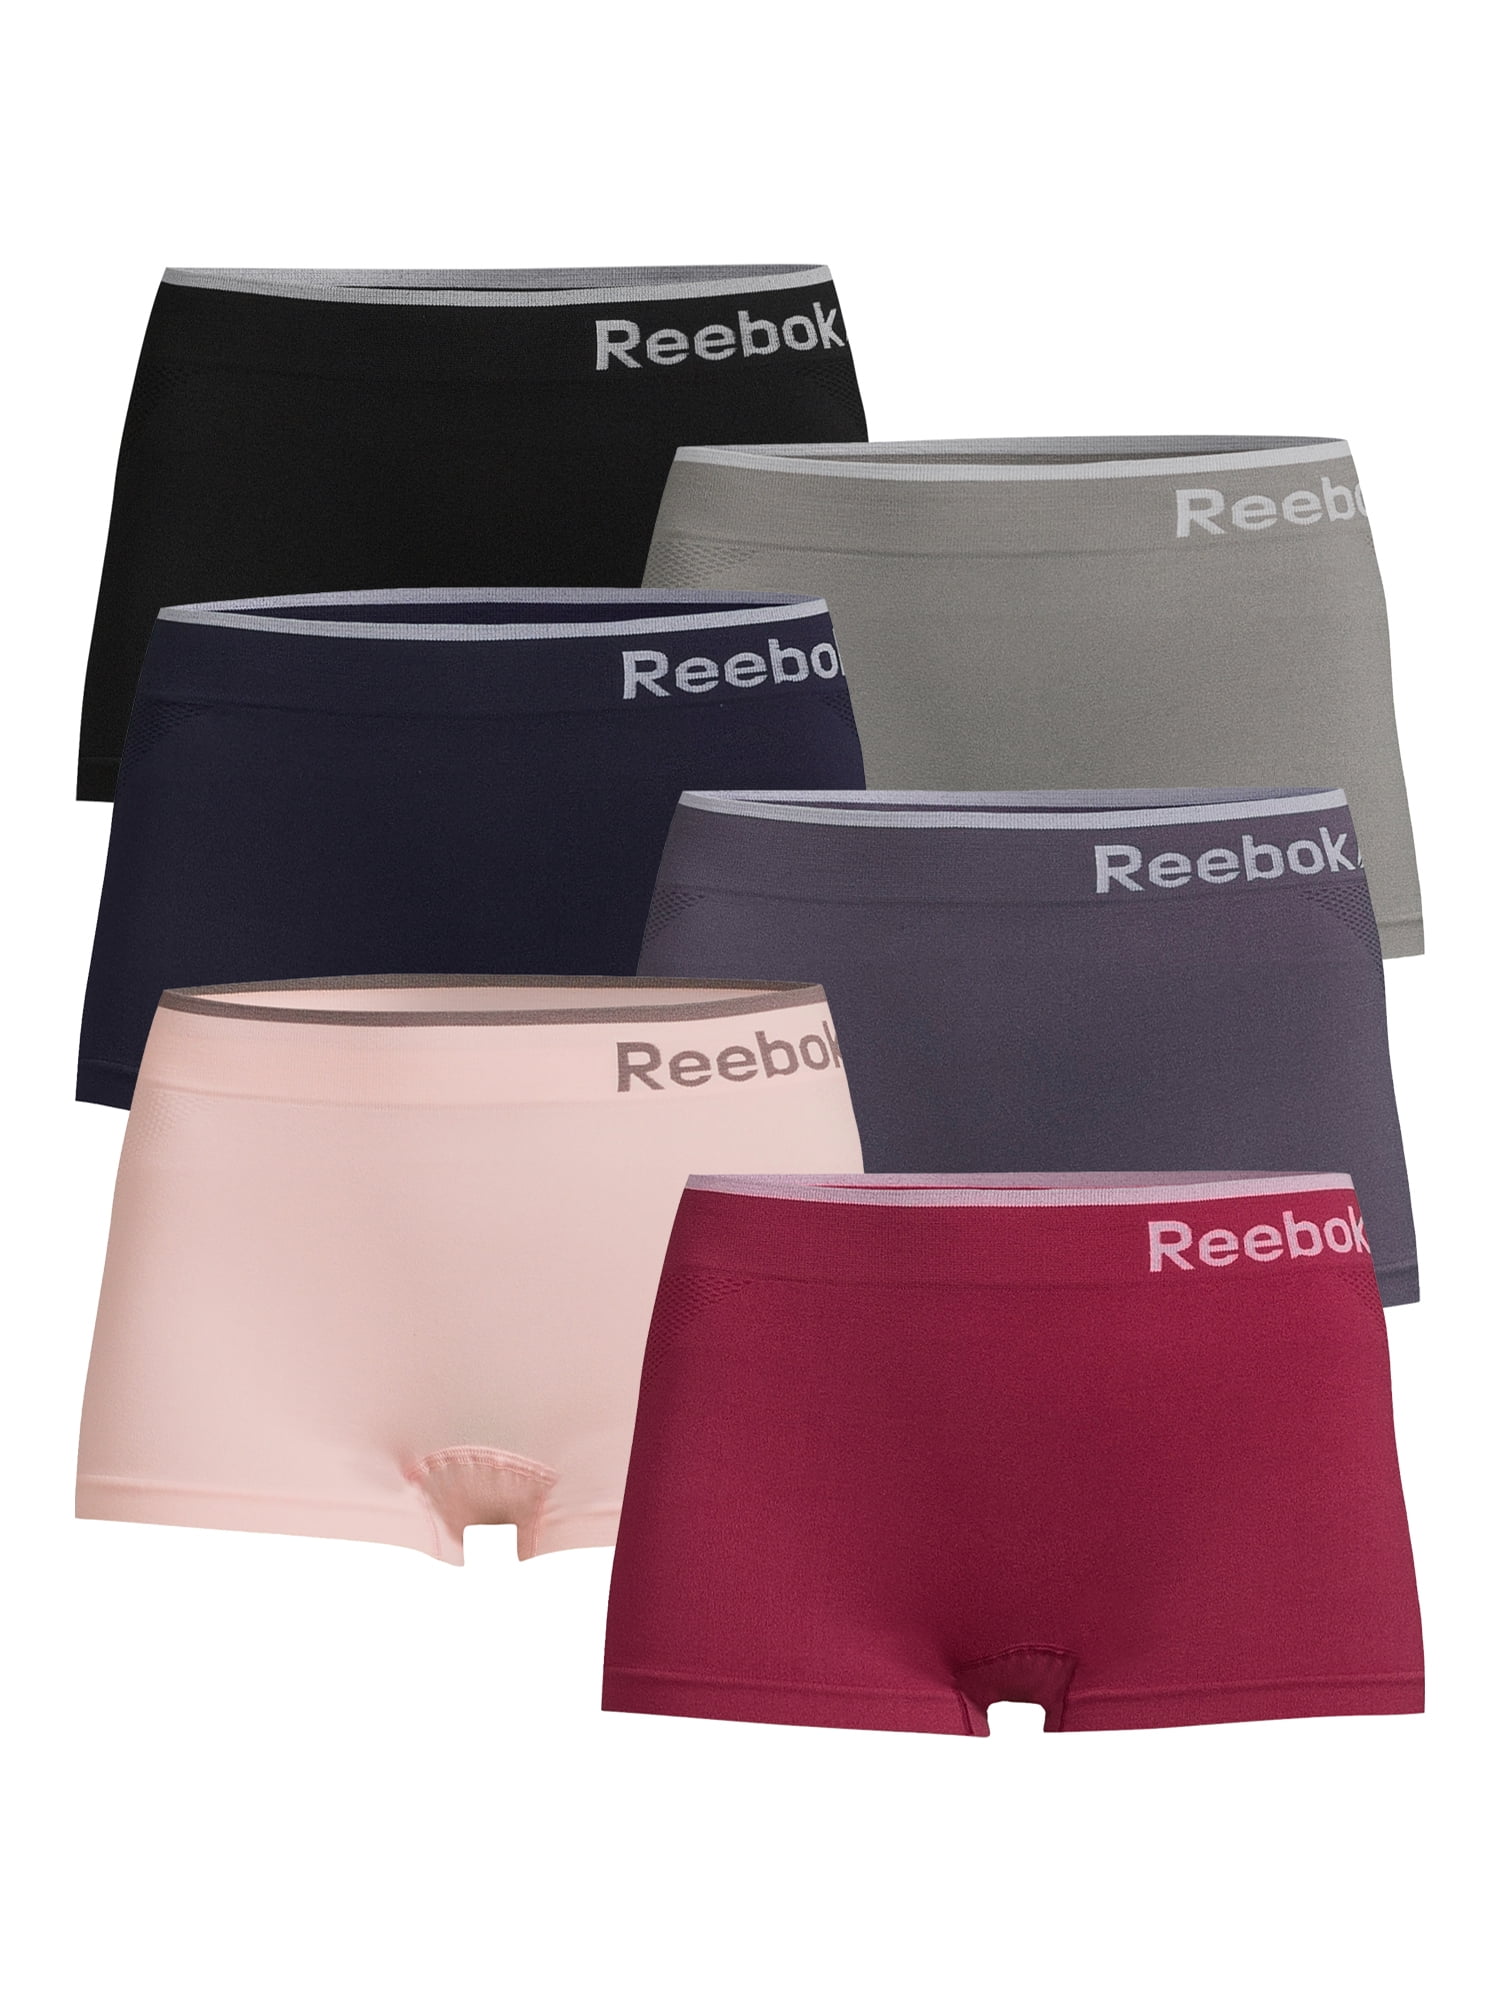 Reebok Women's Missy Underwear 